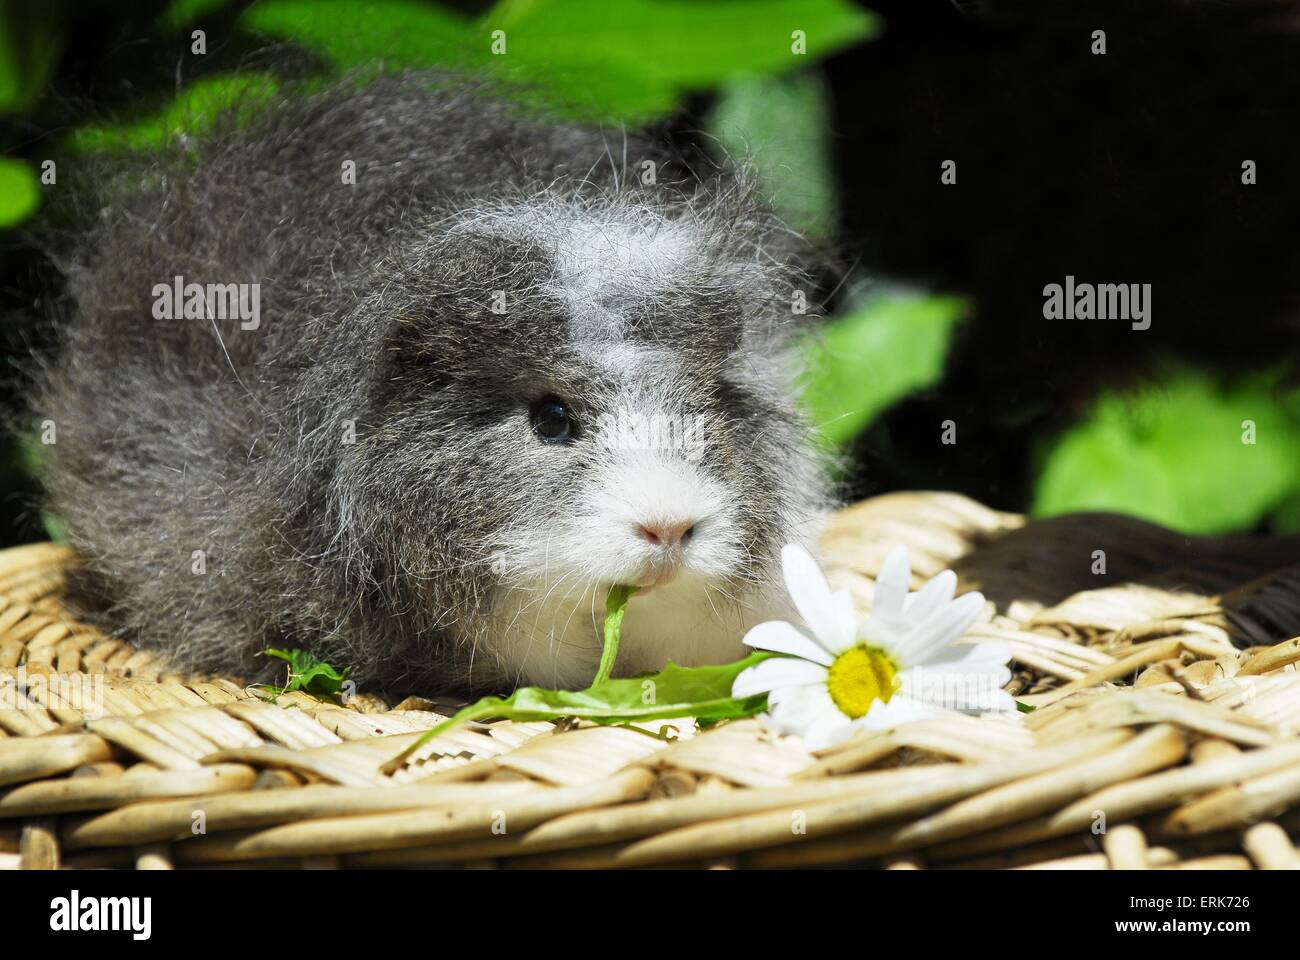 guinea pig Stock Photo